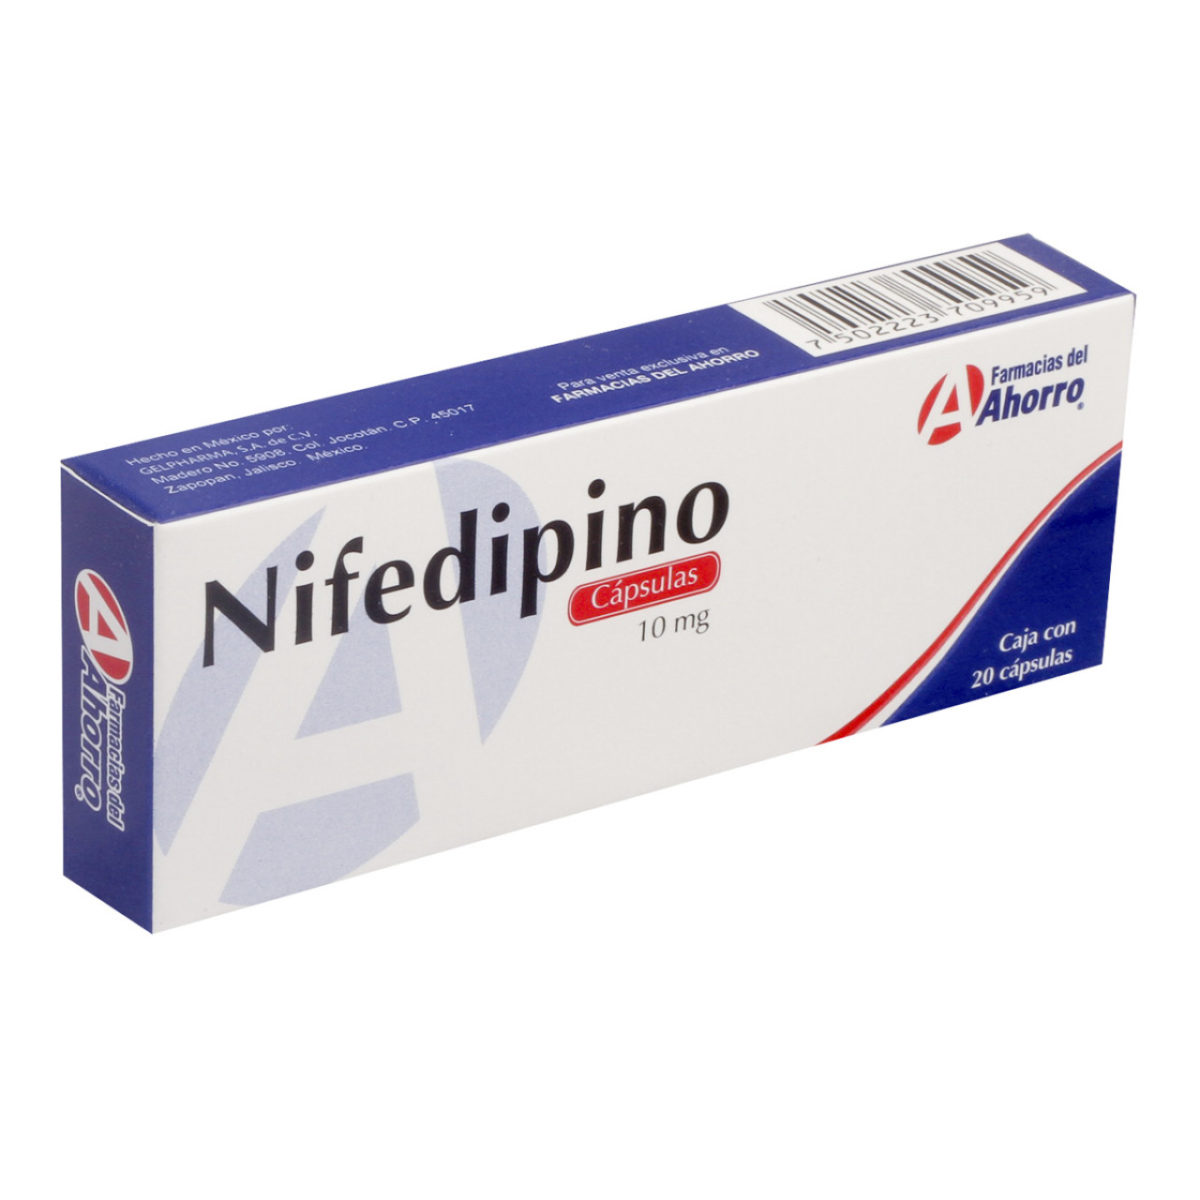 Nifedipino-Para que sirve 